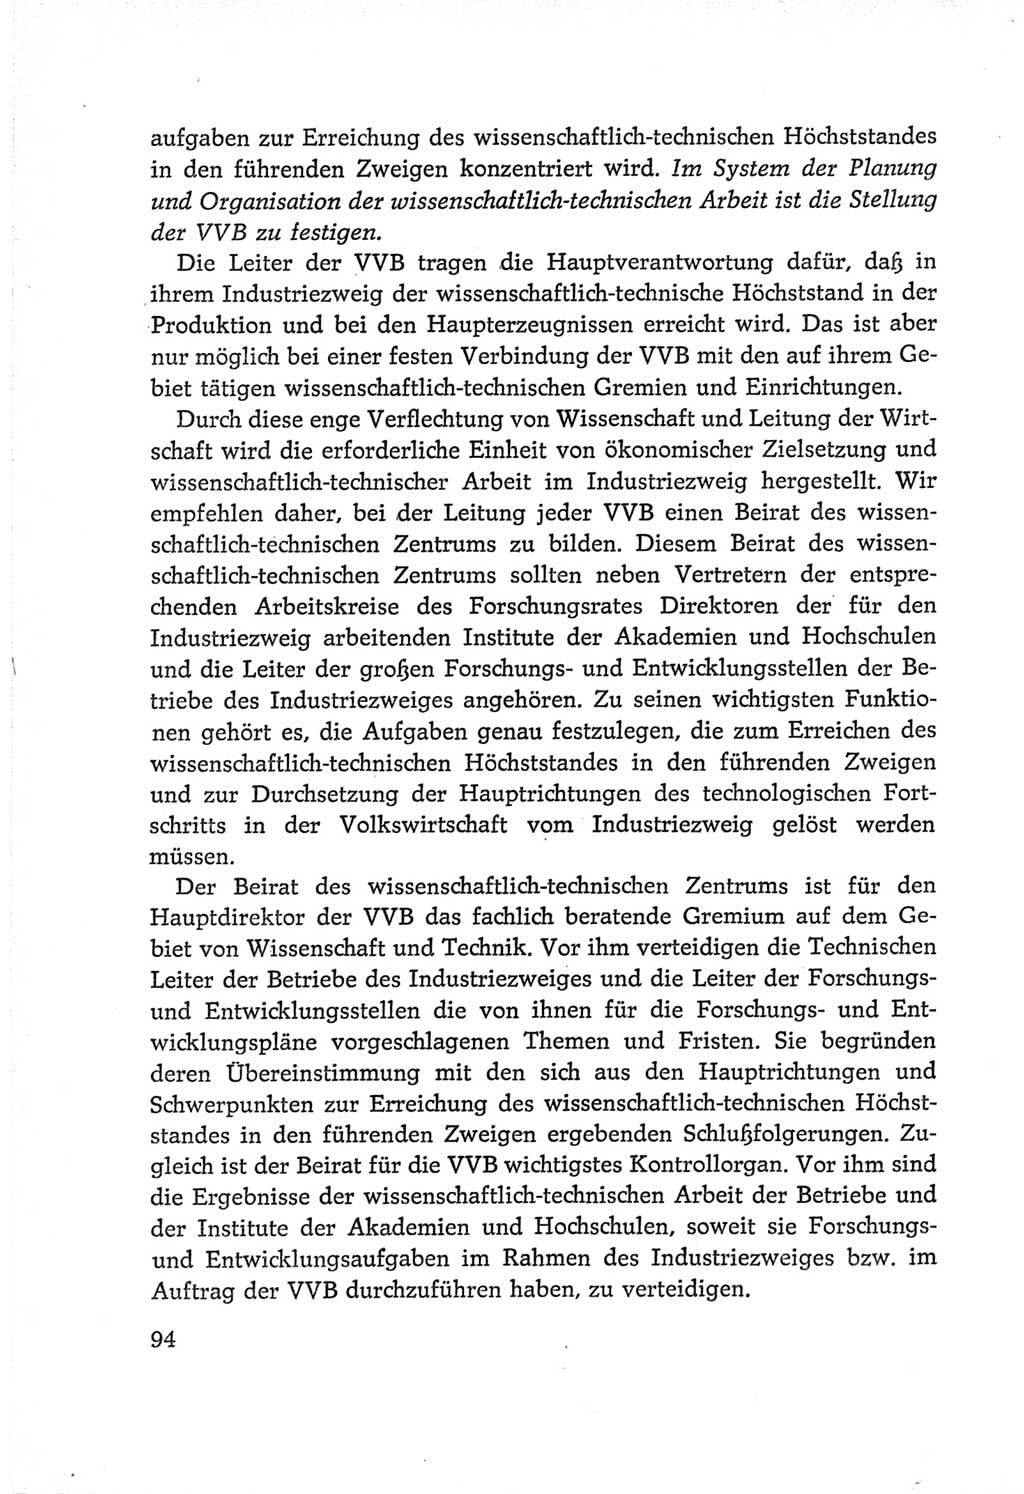 Protokoll der Verhandlungen des Ⅵ. Parteitages der Sozialistischen Einheitspartei Deutschlands (SED) [Deutsche Demokratische Republik (DDR)] 1963, Band Ⅰ, Seite 94 (Prot. Verh. Ⅵ. PT SED DDR 1963, Bd. Ⅰ, S. 94)